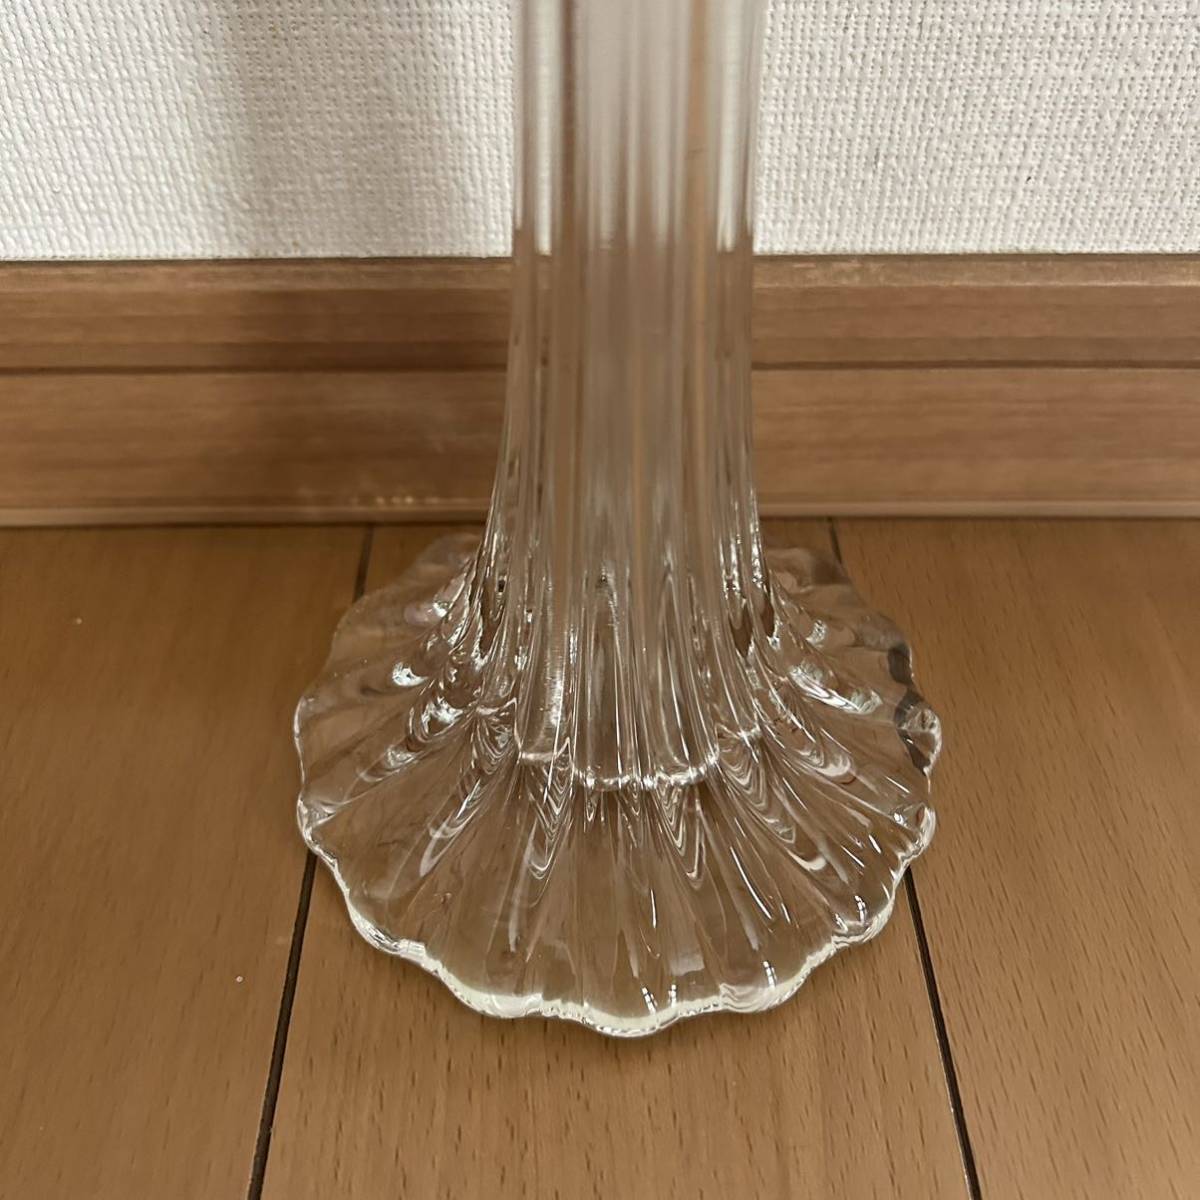  rare glass vase one wheel .. flower base height approximately 61cm antique ornament interior flower vase flower go in 